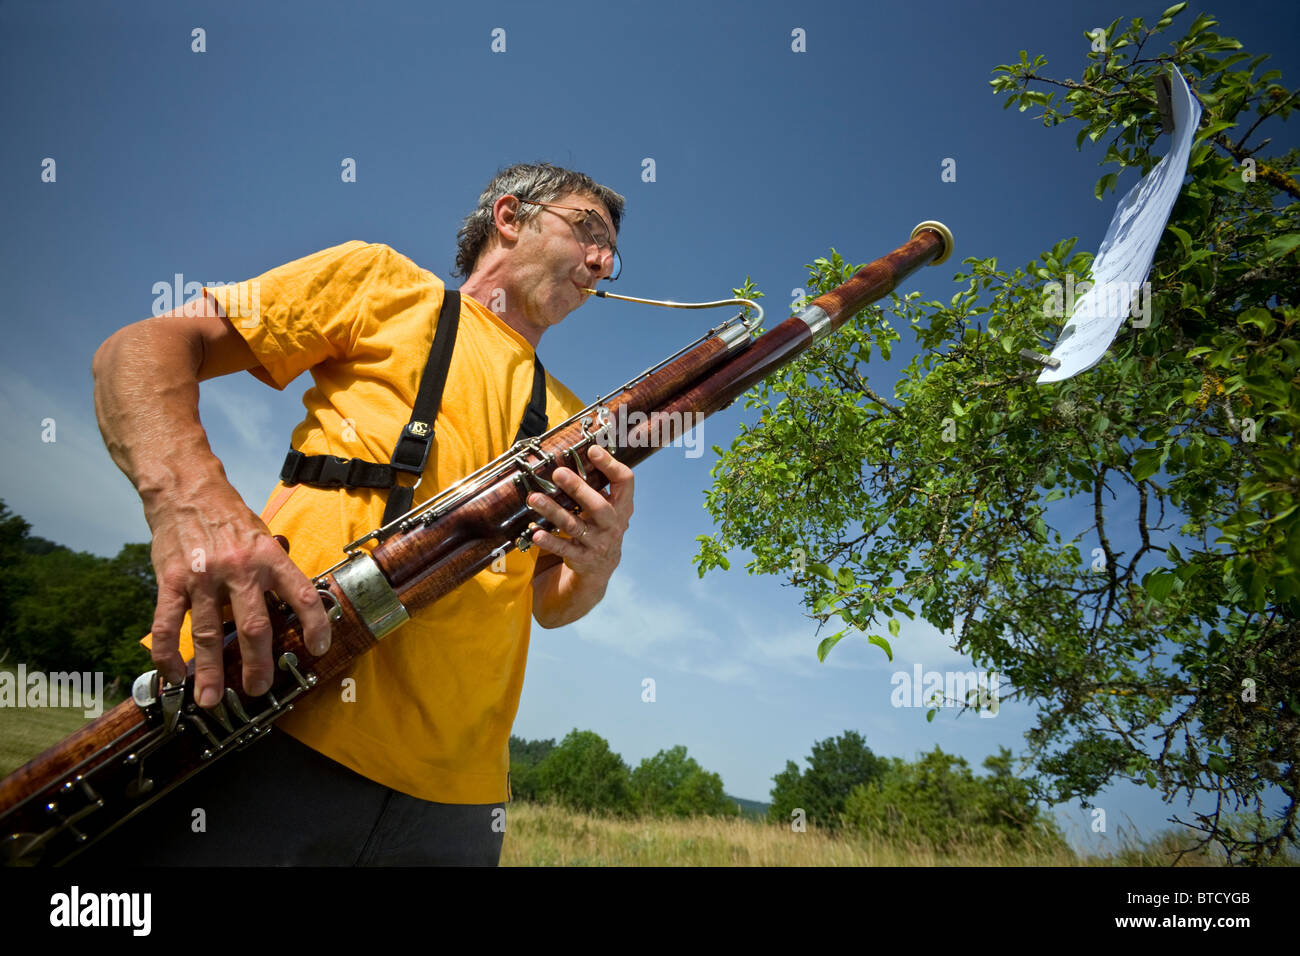 A man playing the bassoon in open air (Auvergne - France). Joueur de basson jouant de son instrument en pleine nature (France). Stock Photo